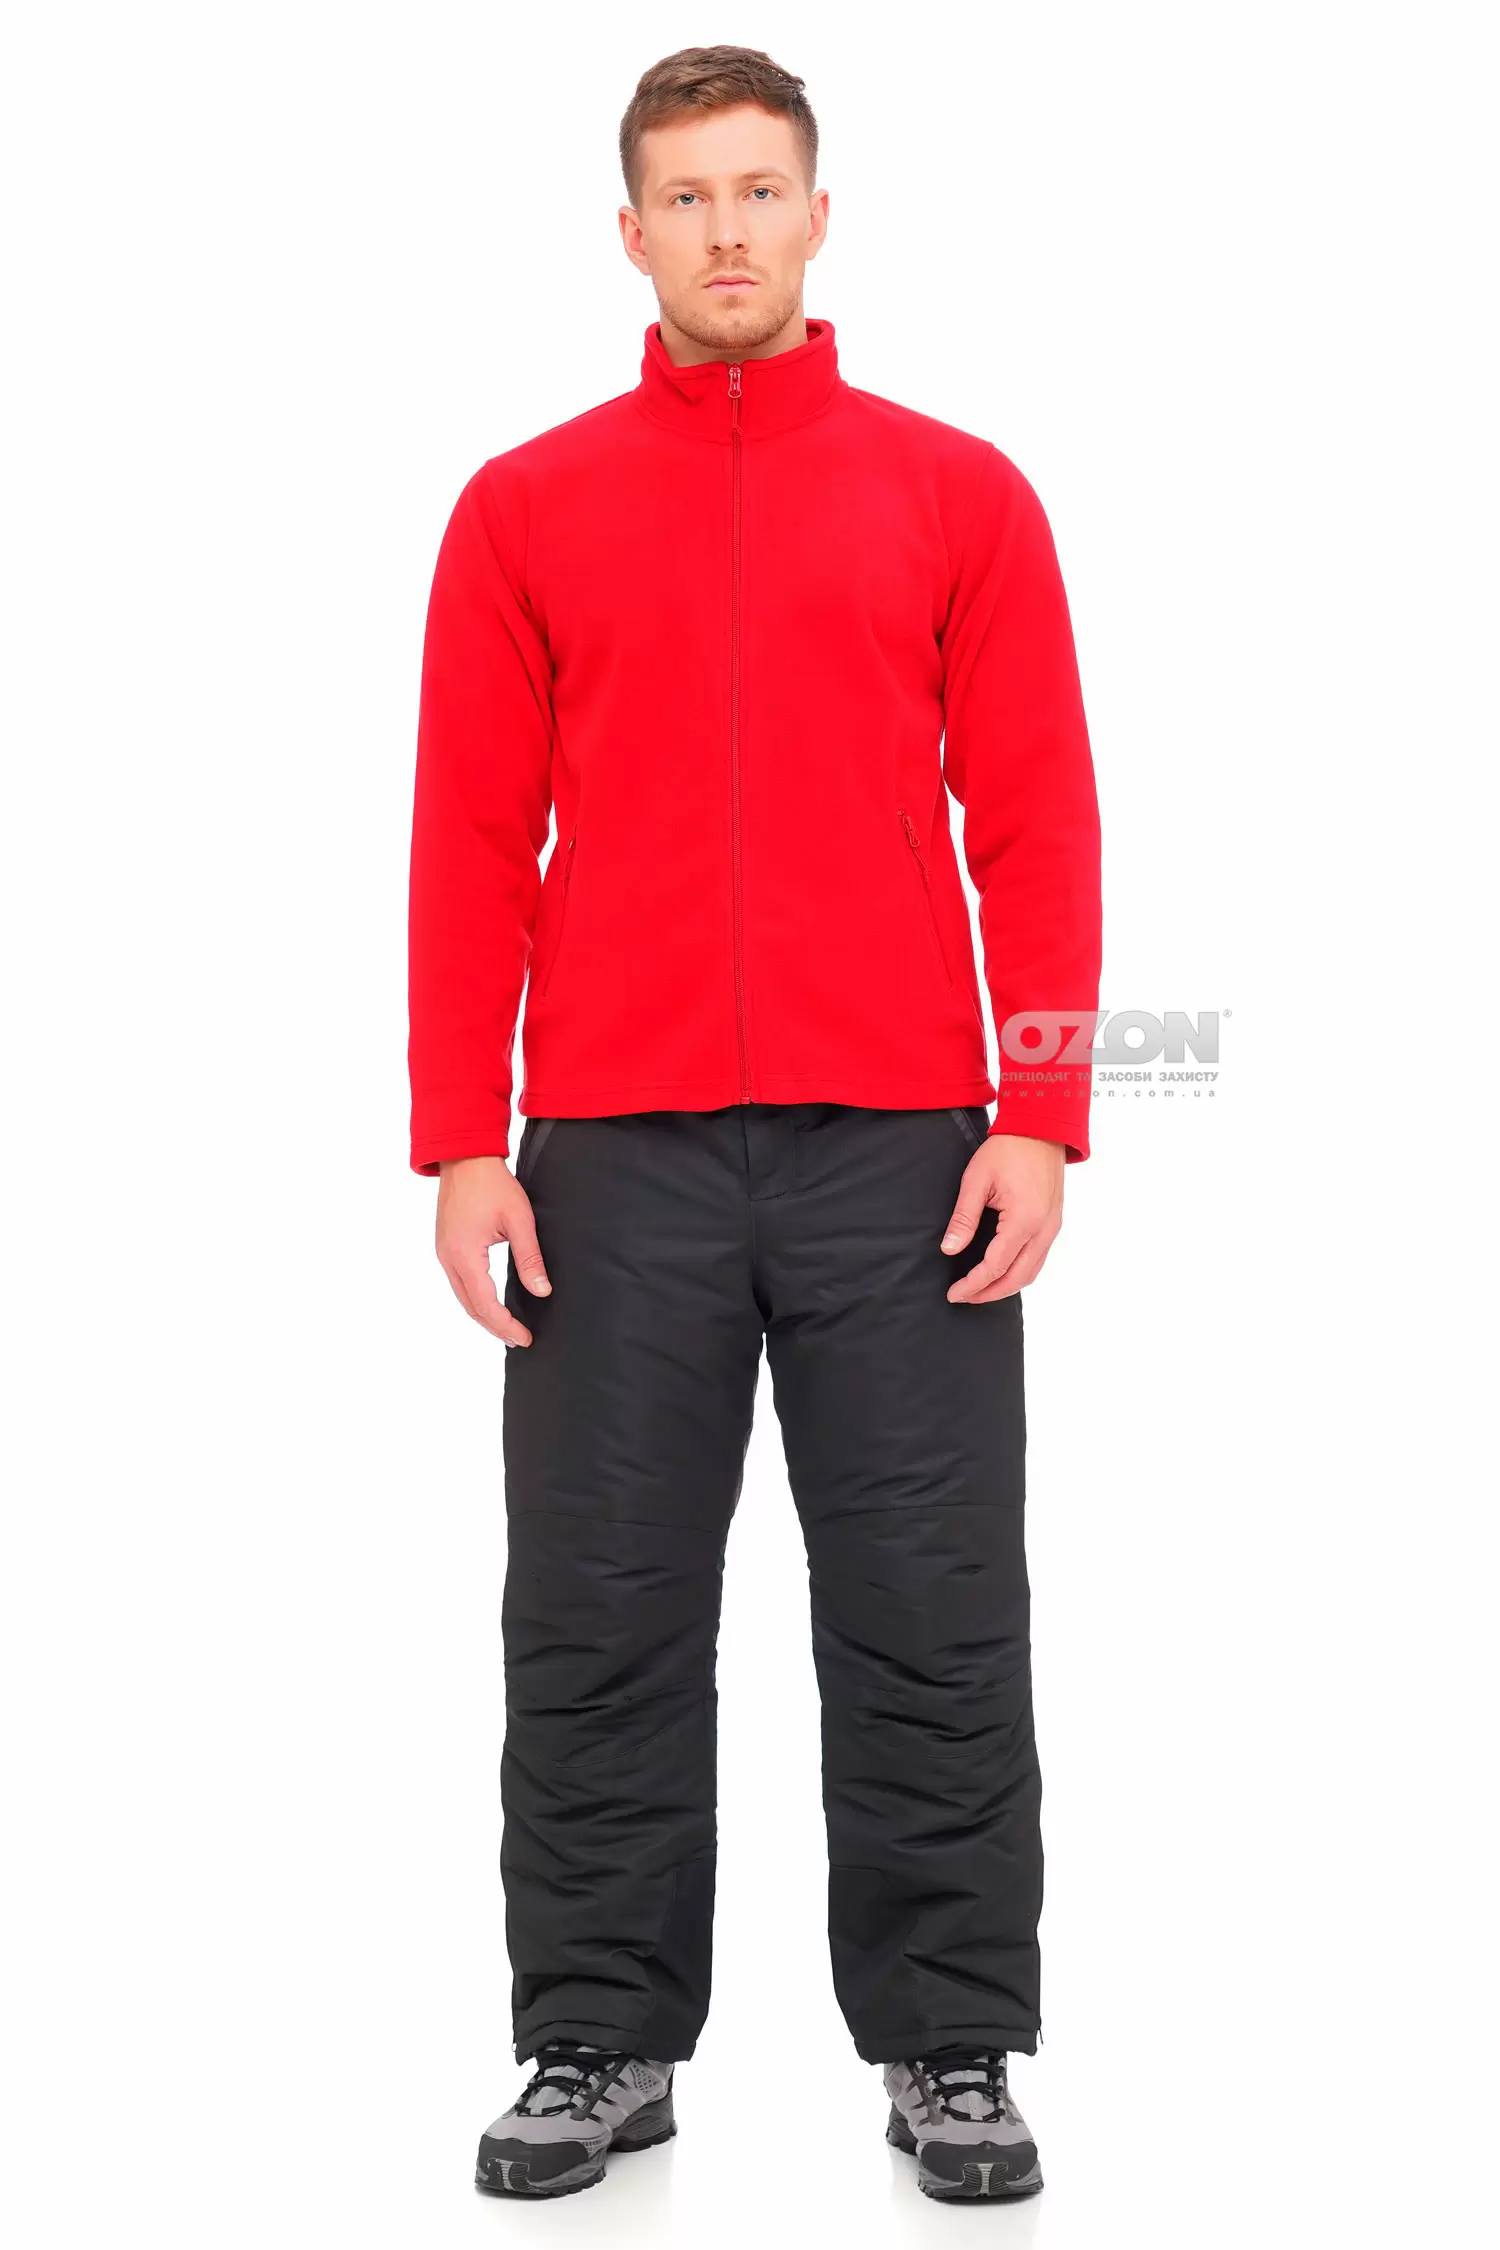 Куртка флісова B&C DUO, червона, без капюшону - Фото 1